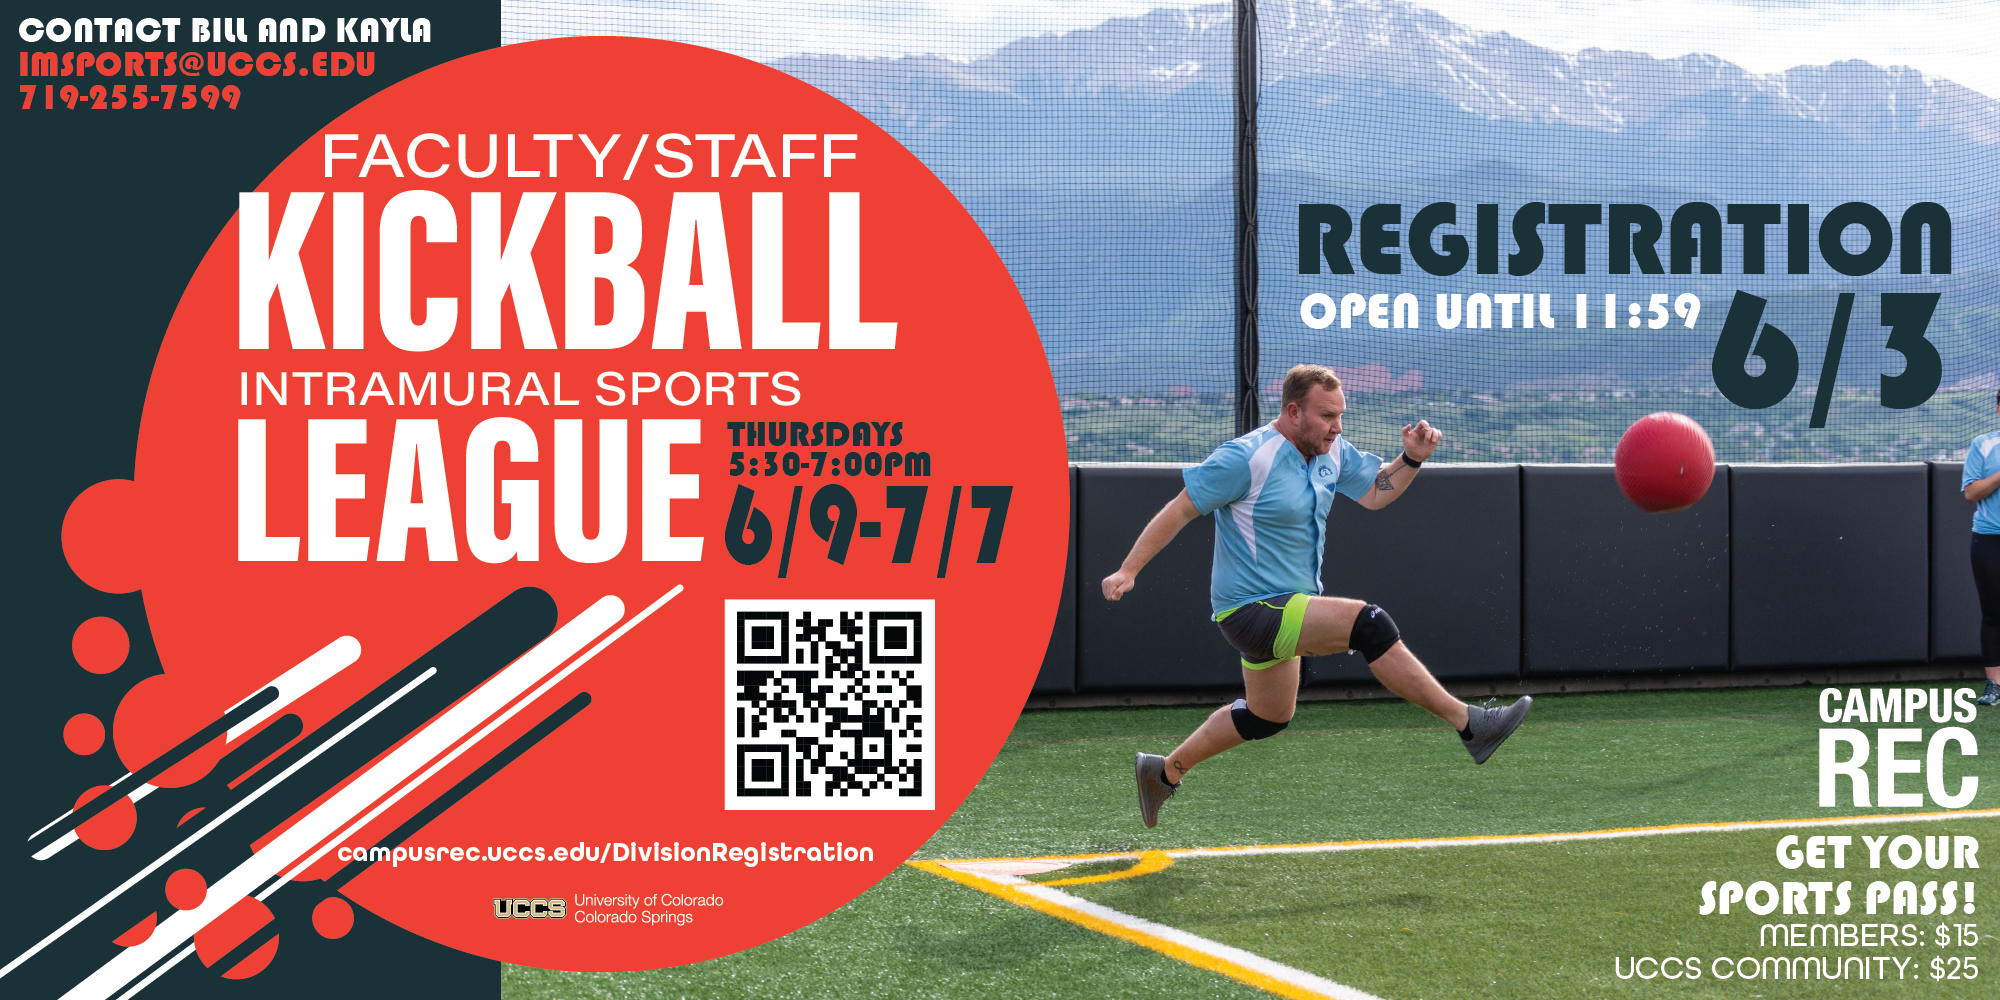 Faculty/Staff Kickball Registration Deadline June 3rd